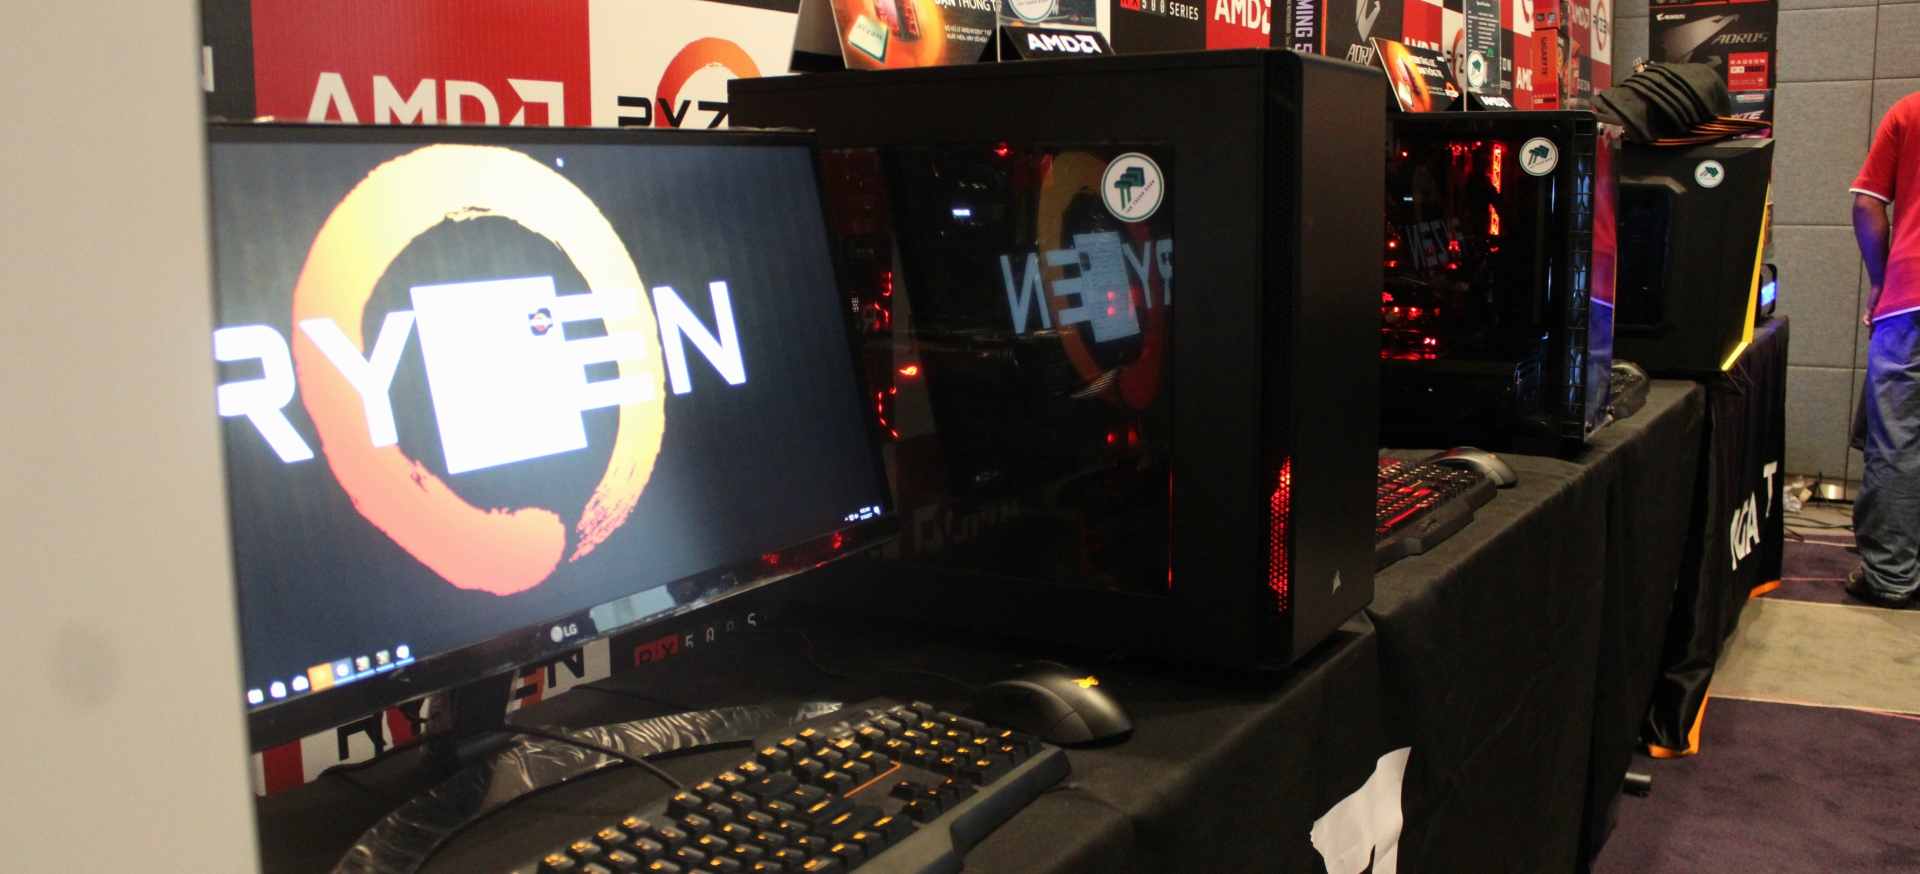 AMD trở lại với hai “biệt đội” vi xử lý Ryzen và dòng card đồ họa RX 500